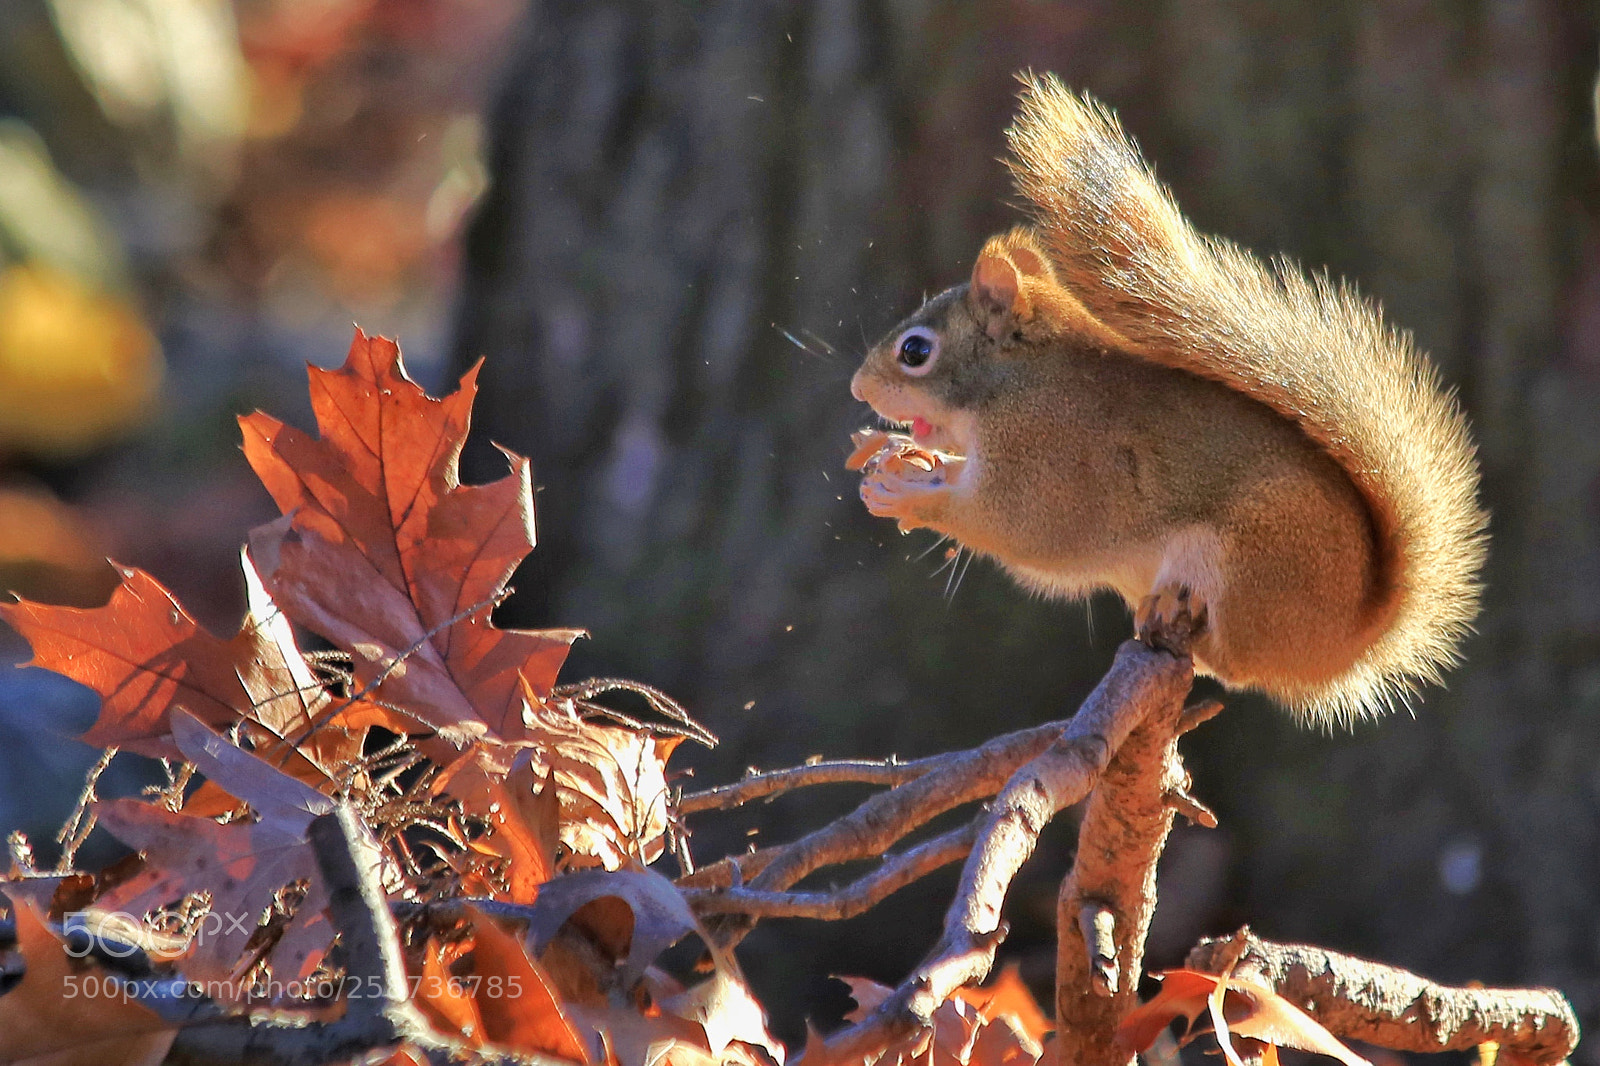 Canon EOS 6D sample photo. Squirrel photography